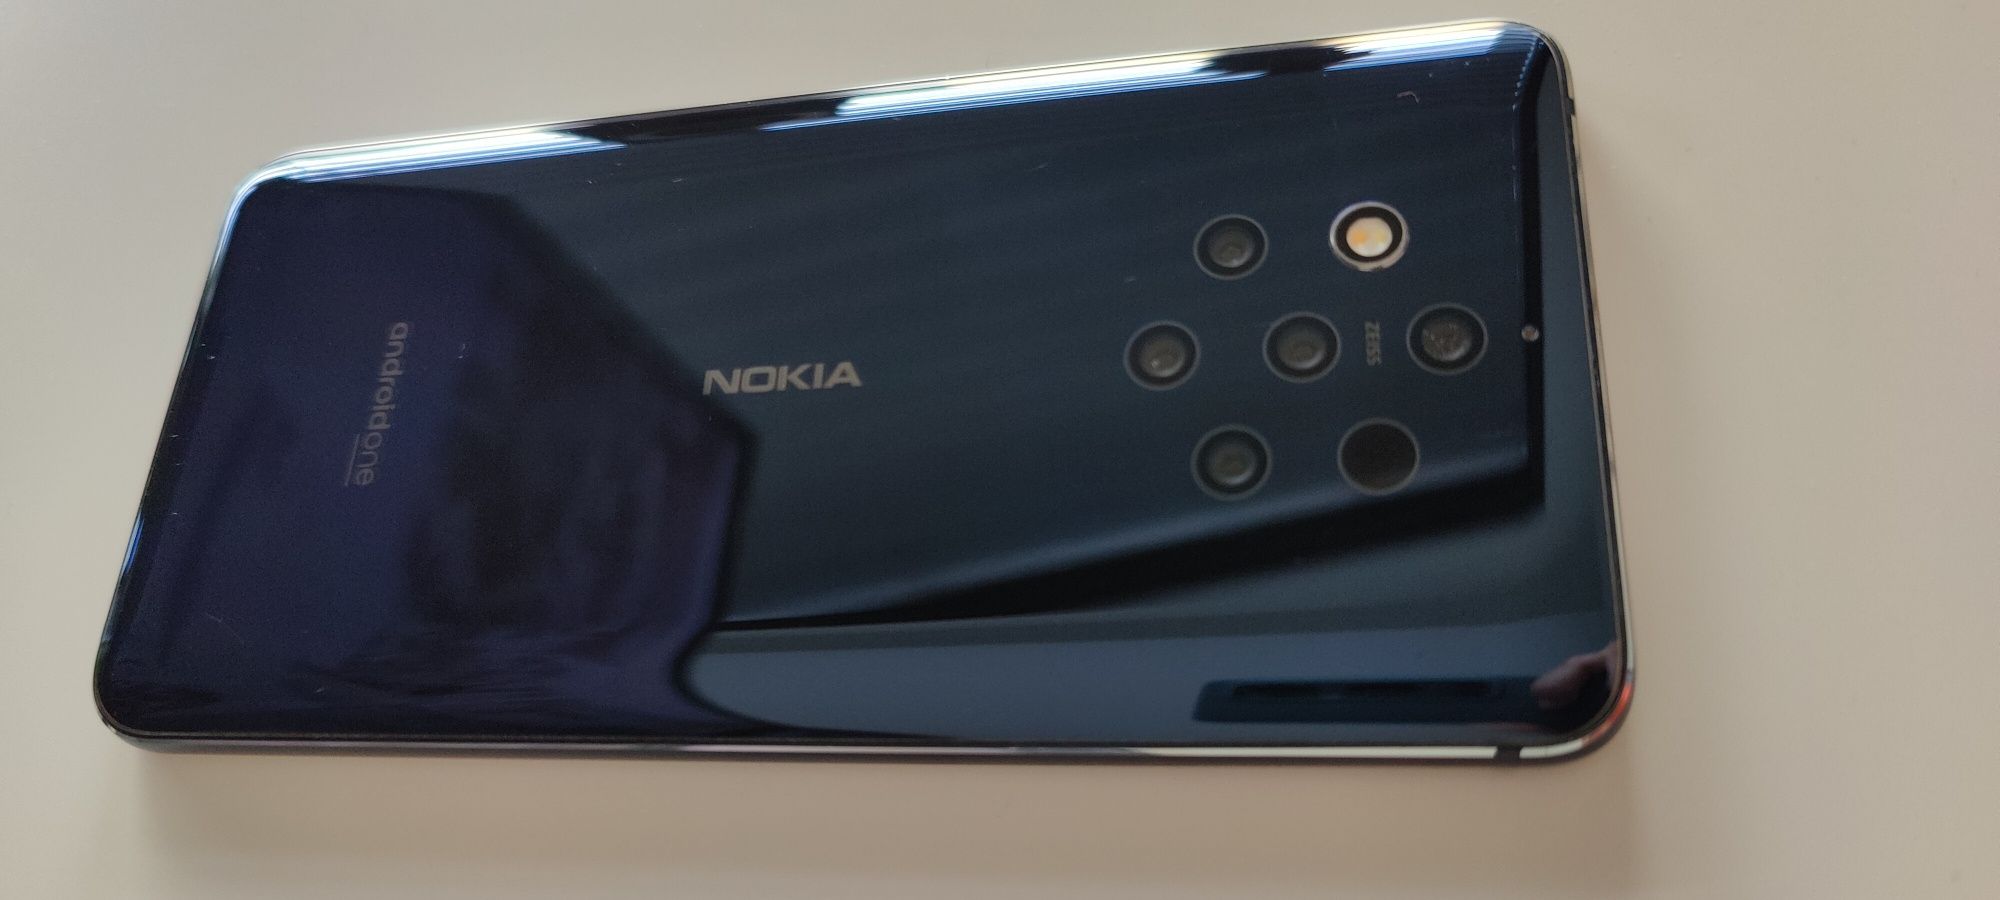 Nokia 9 Pureview 128Gb Dual-sim usado e com garantia de ano e meio